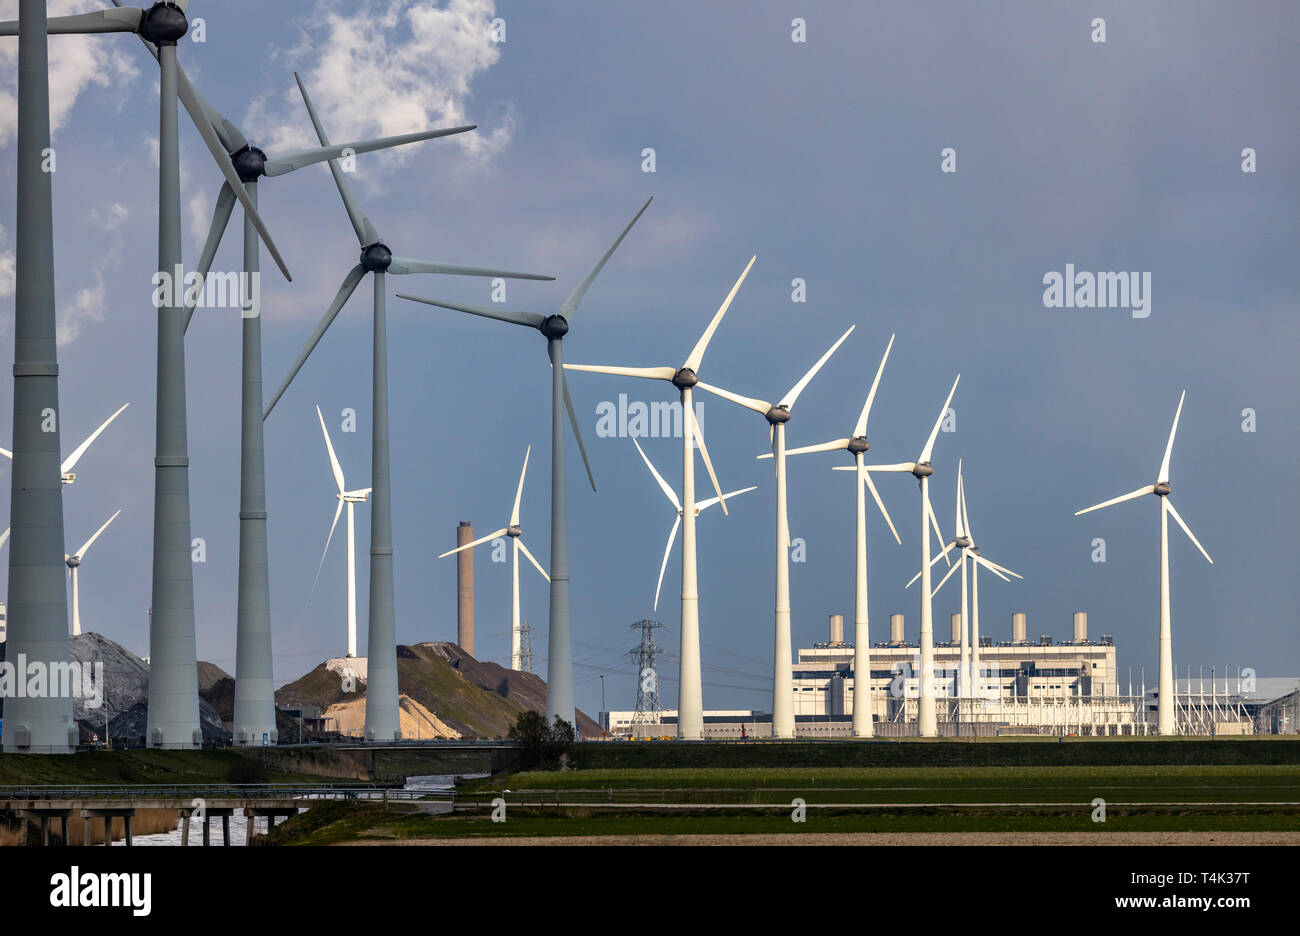 Windpark Westereems und Growind, insgesamt über 80 Windenergieanlagen, in Eemshaven Seehafen, Groningen Provinz, im Nordwesten der Niederlande, Stockfoto